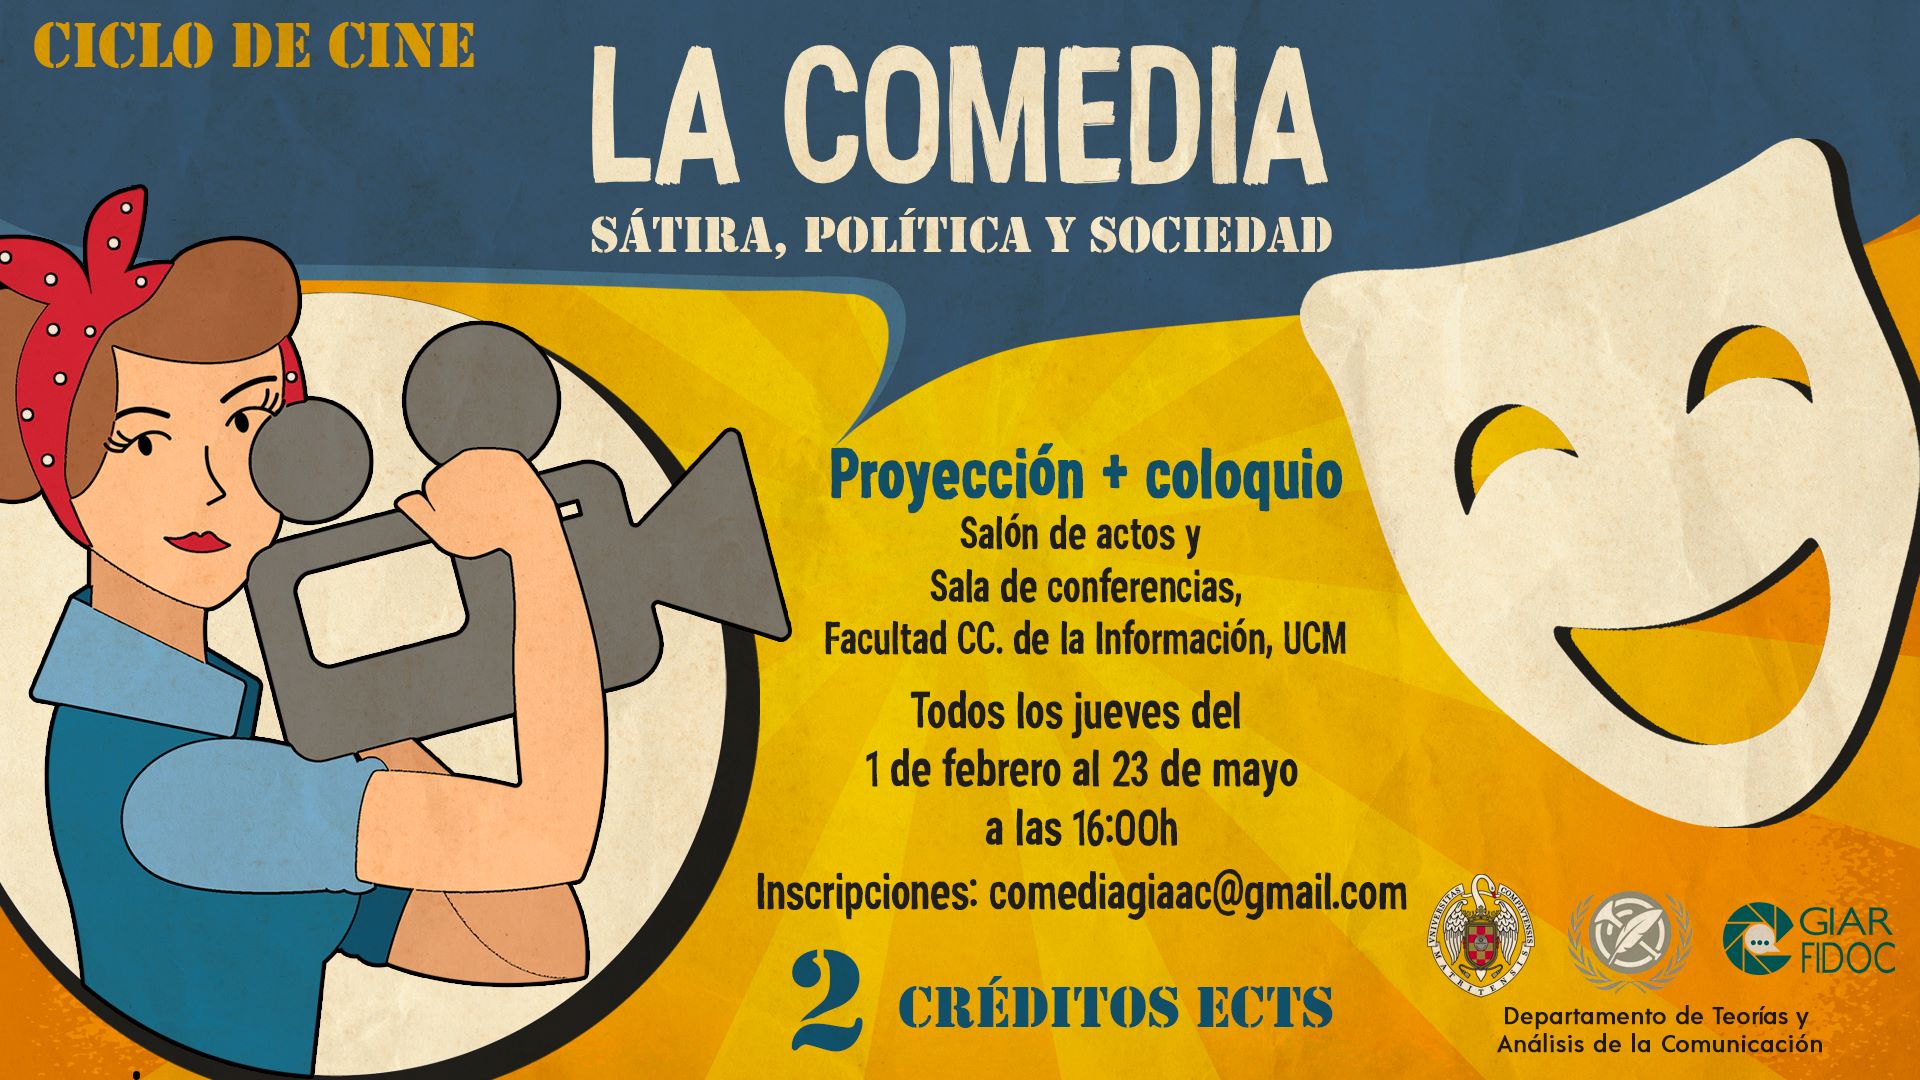 CICLO DE CINE. La comedia: sátira, política y sociedad